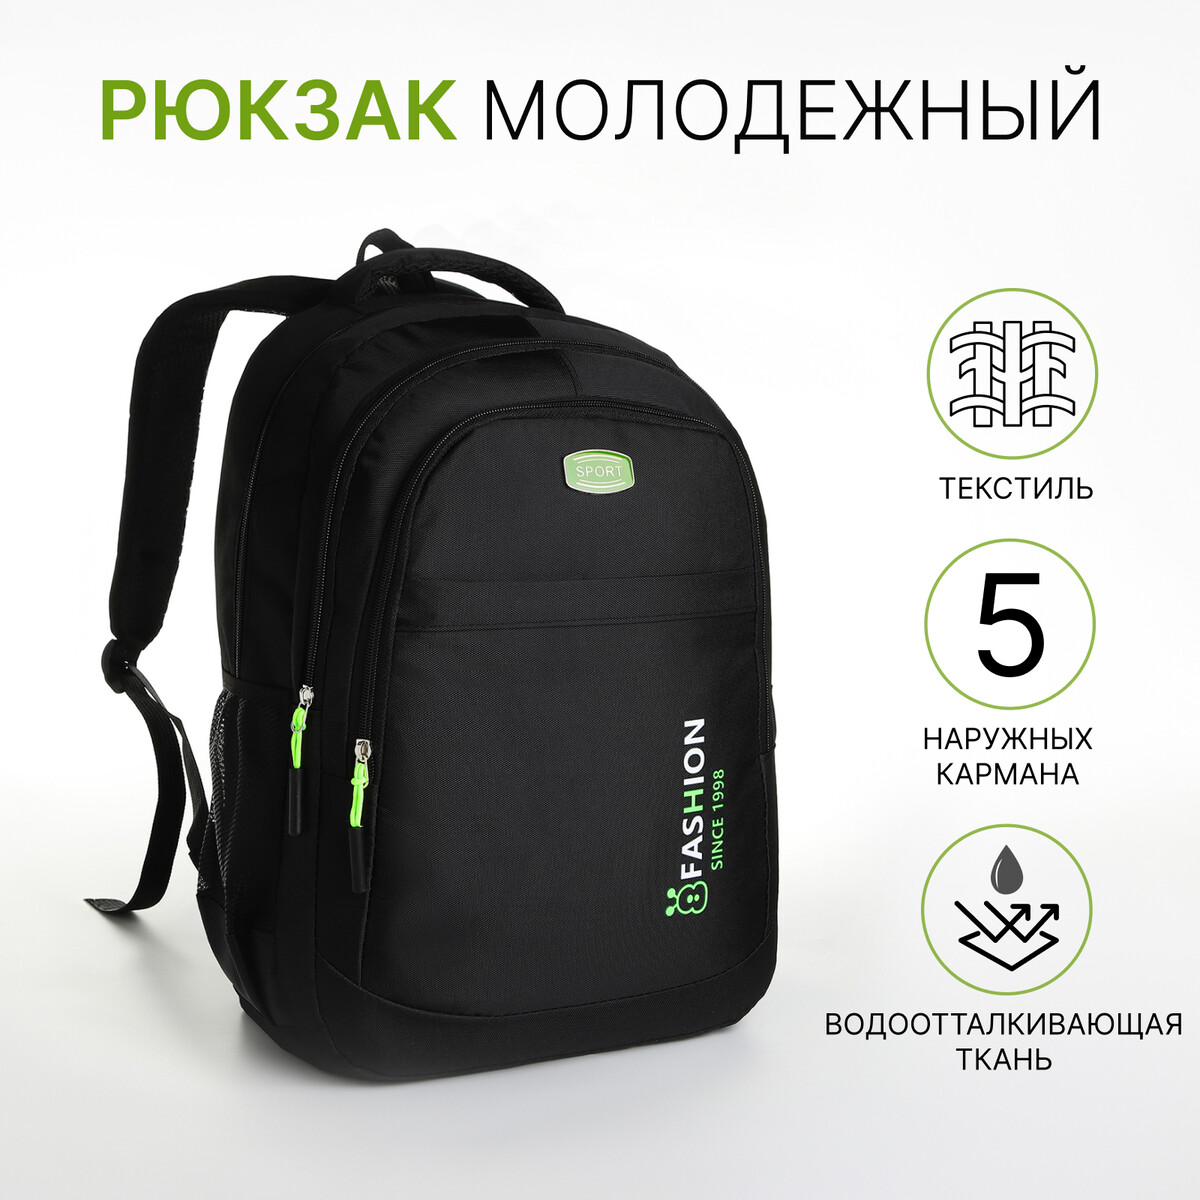 Рюкзак молодежный из текстиля на молнии, 5 карманов, цвет черный/зеленый рюкзак на молнии с увеличением 55л 5 наружных карманов зеленый